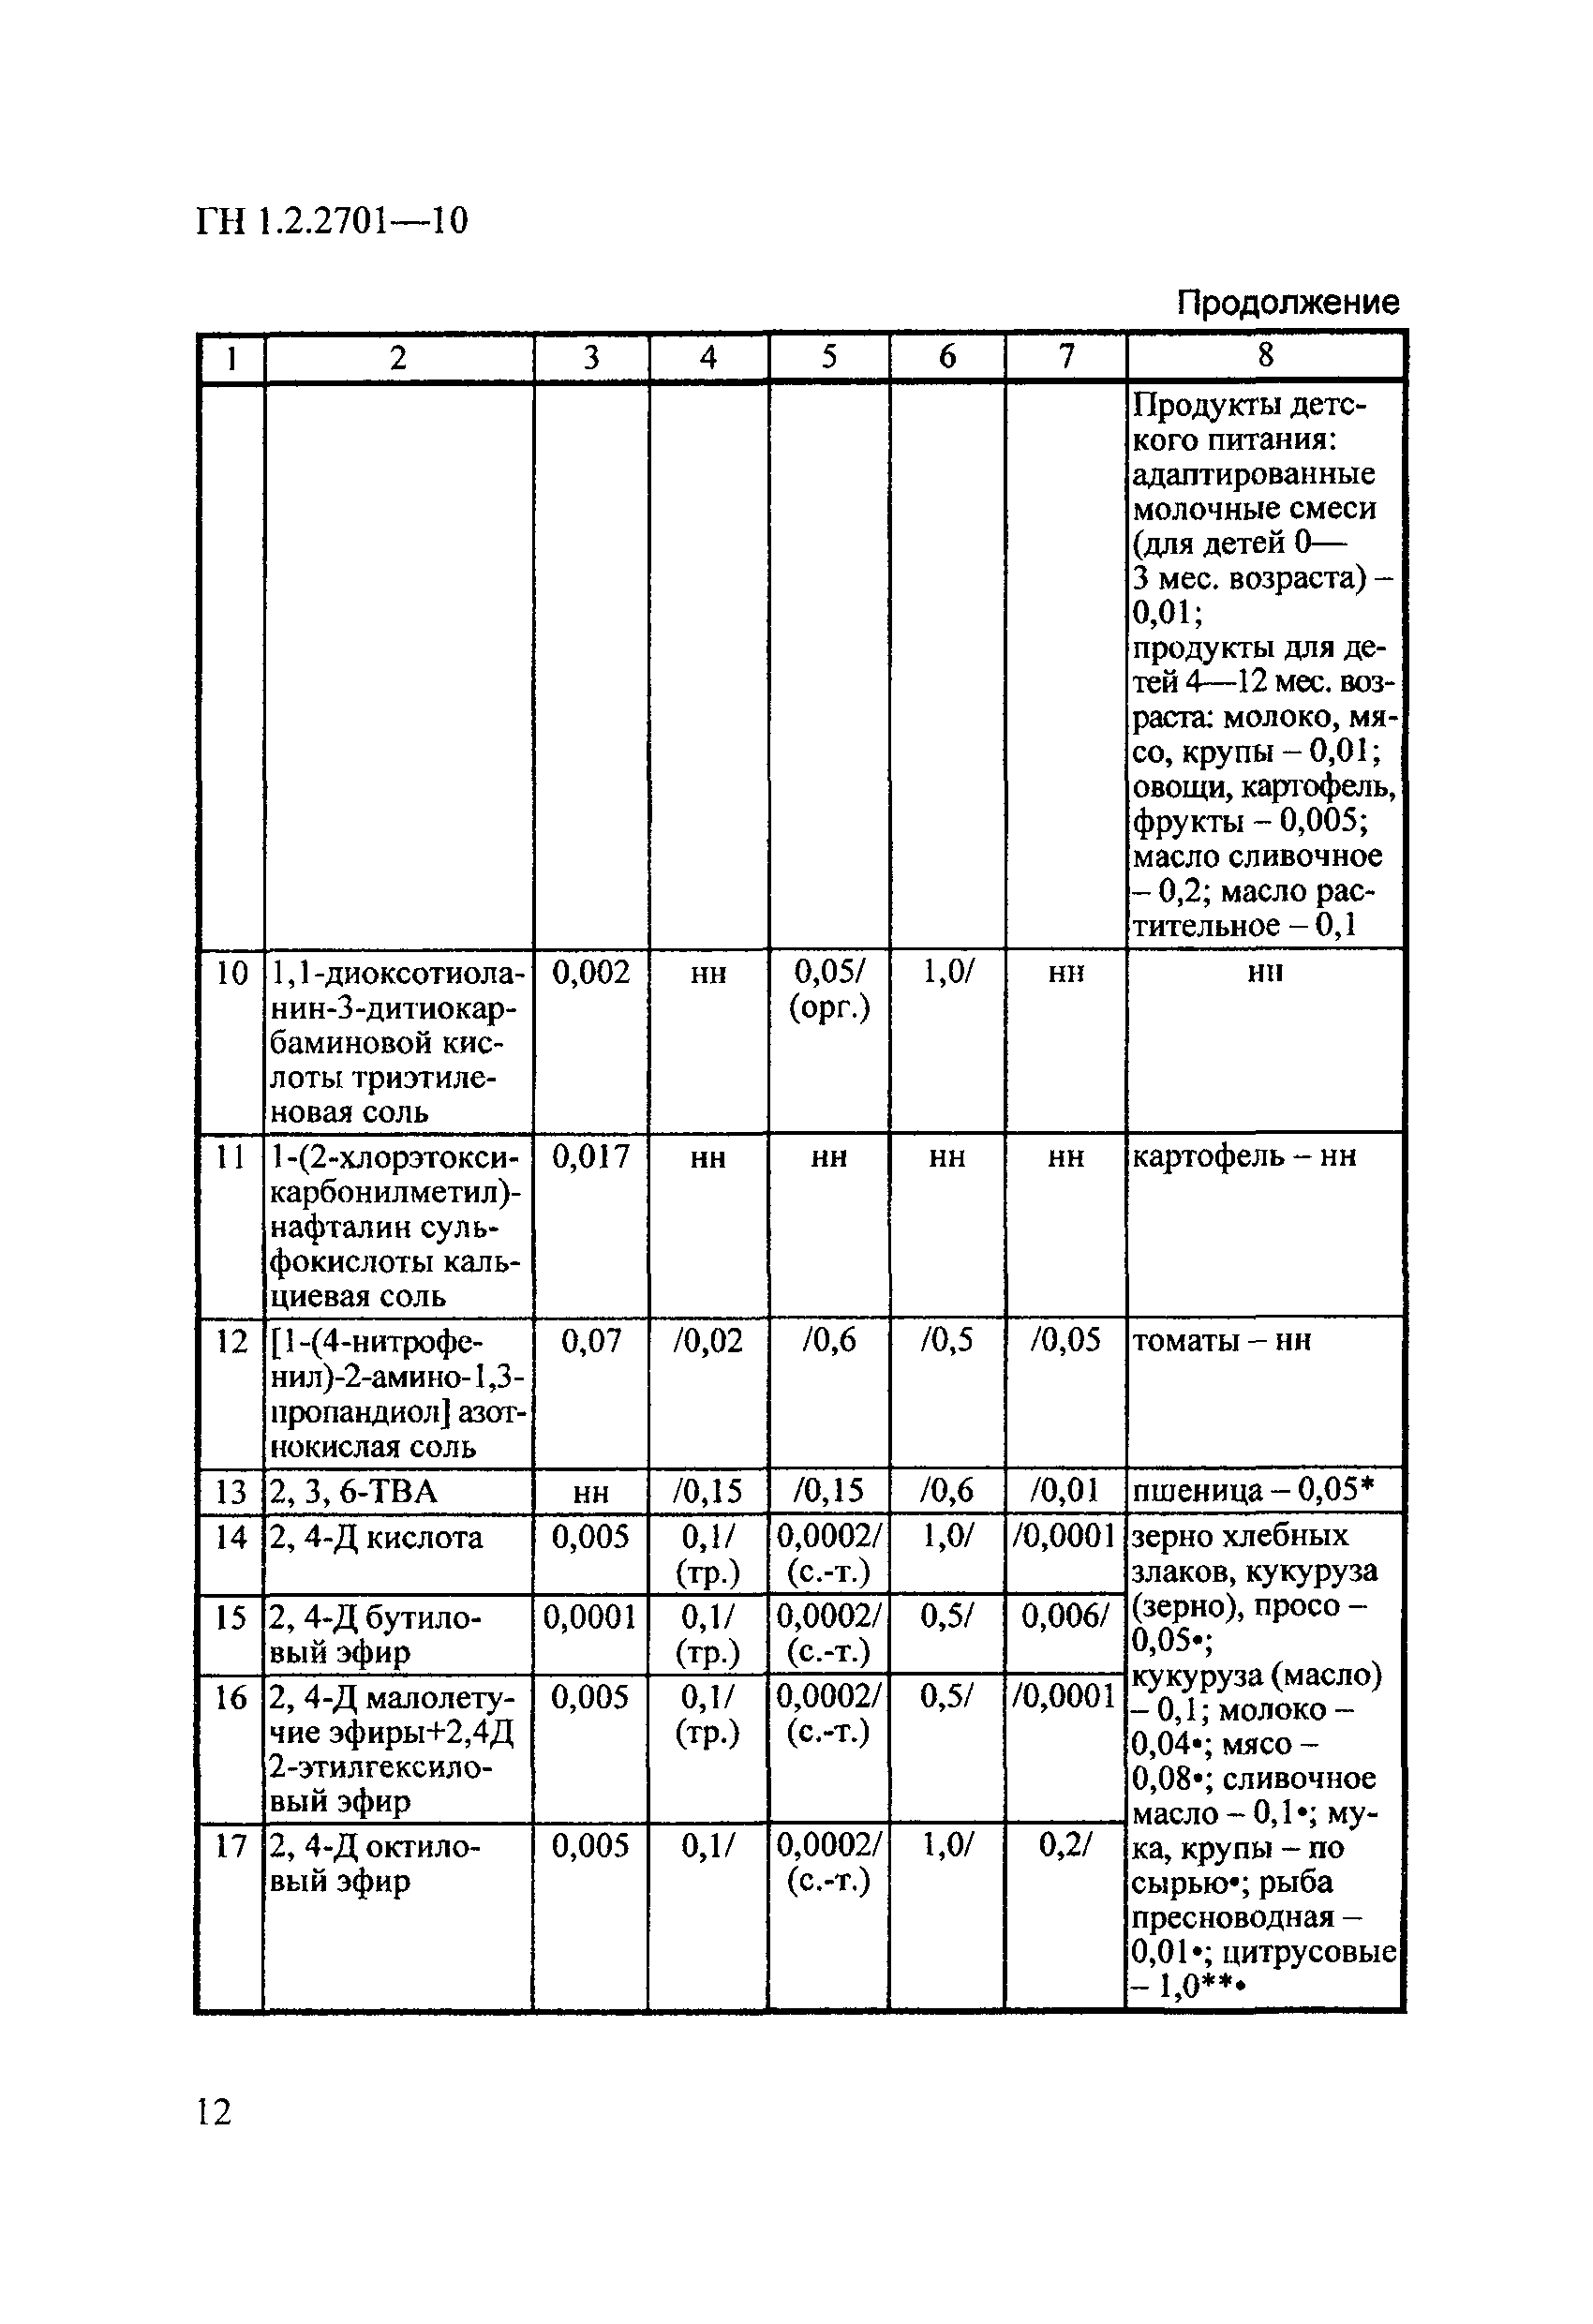 ГН 1.2.2701-10